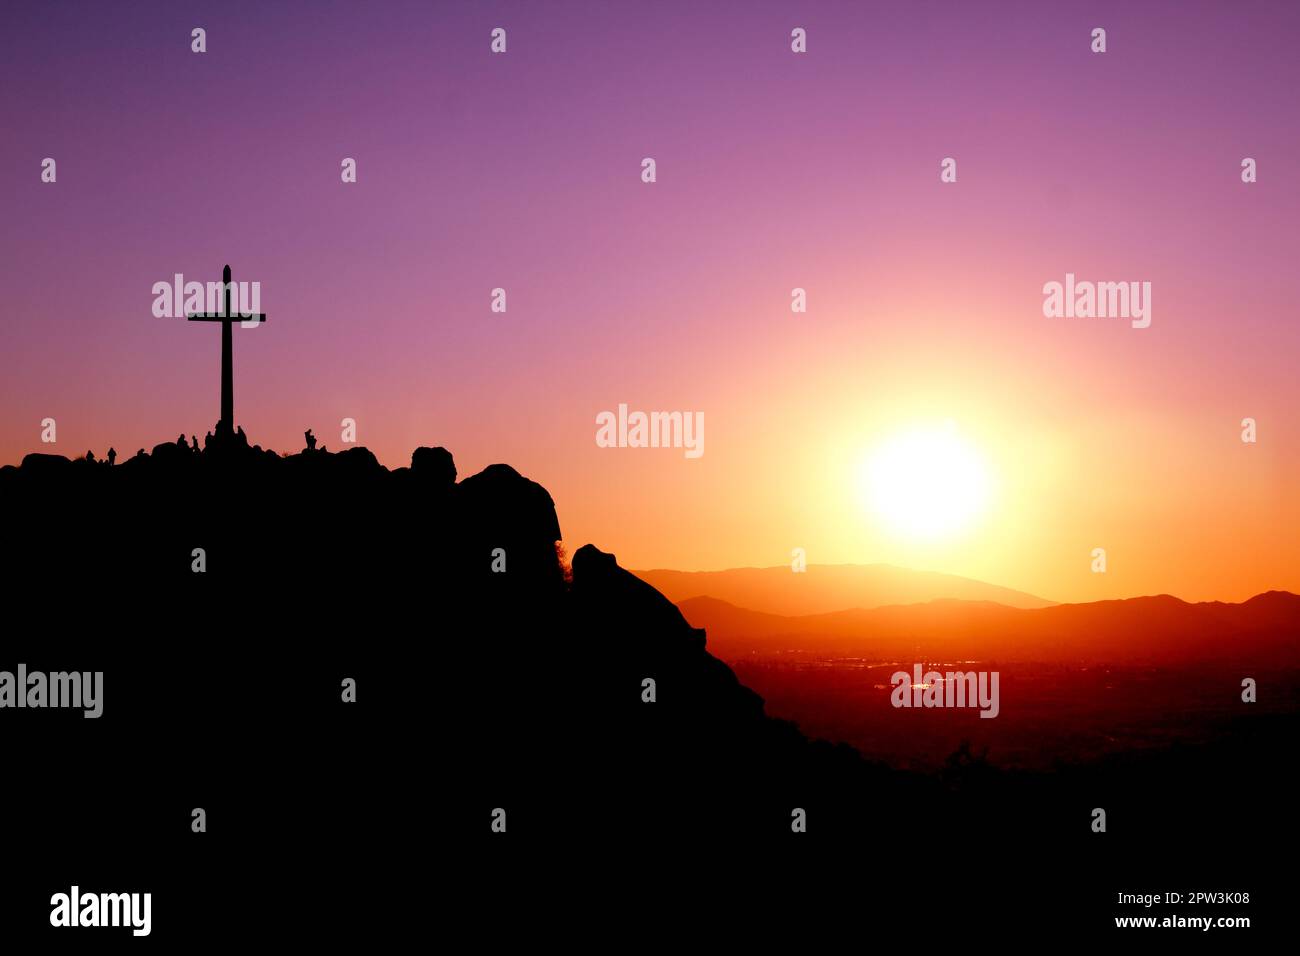 Überqueren Sie den Gipfel eines Berges mit Silhouetten von Menschen und einem violetten, orangefarbenen und gelben Sonnenuntergang Stockfoto